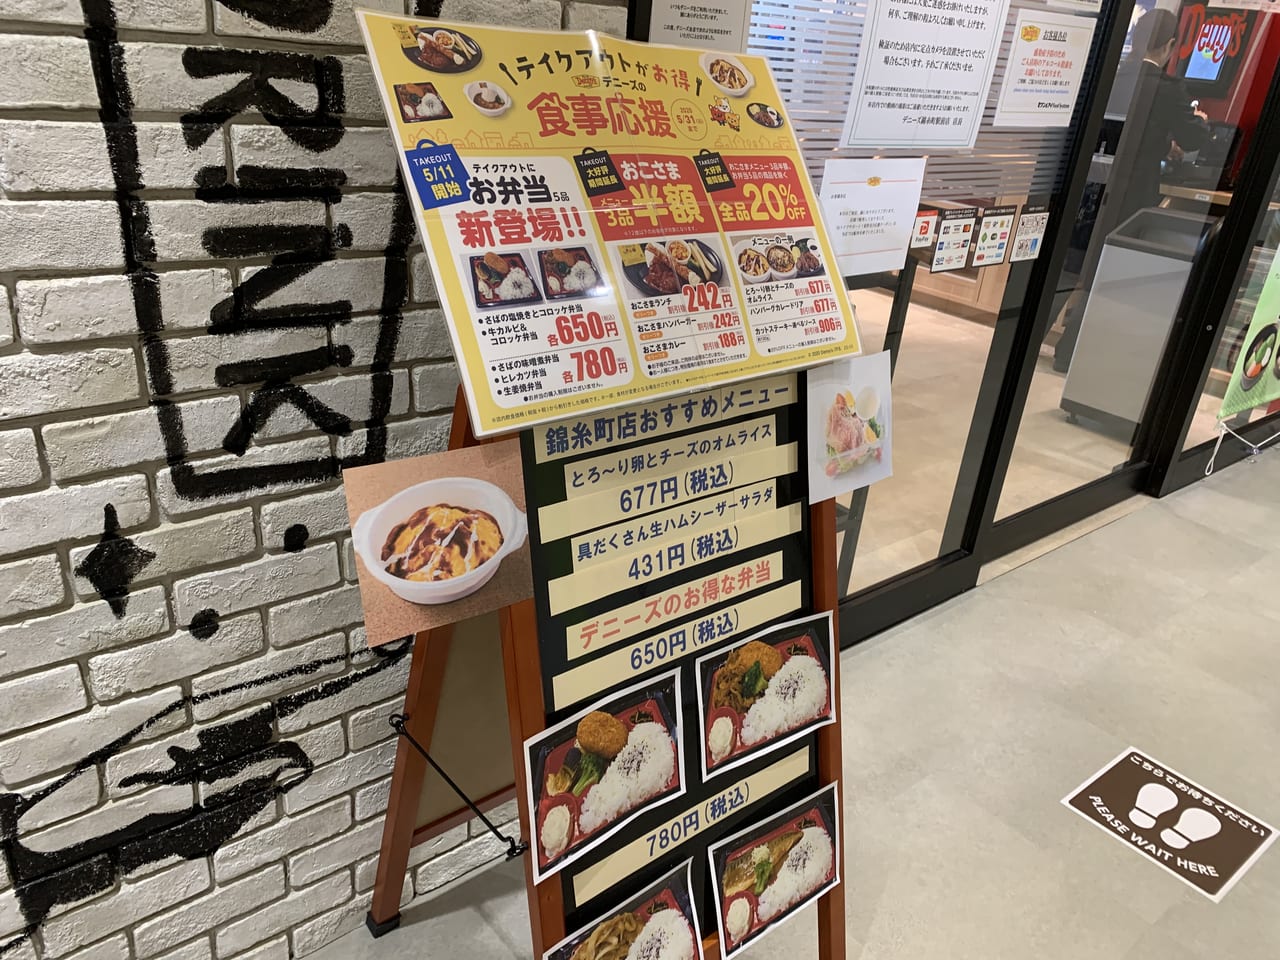 墨田区 パンケーキミックスがどこにも売ってないとお困りの方に朗報 デニーズでパンケーキミックス販売中です 号外net 墨田区